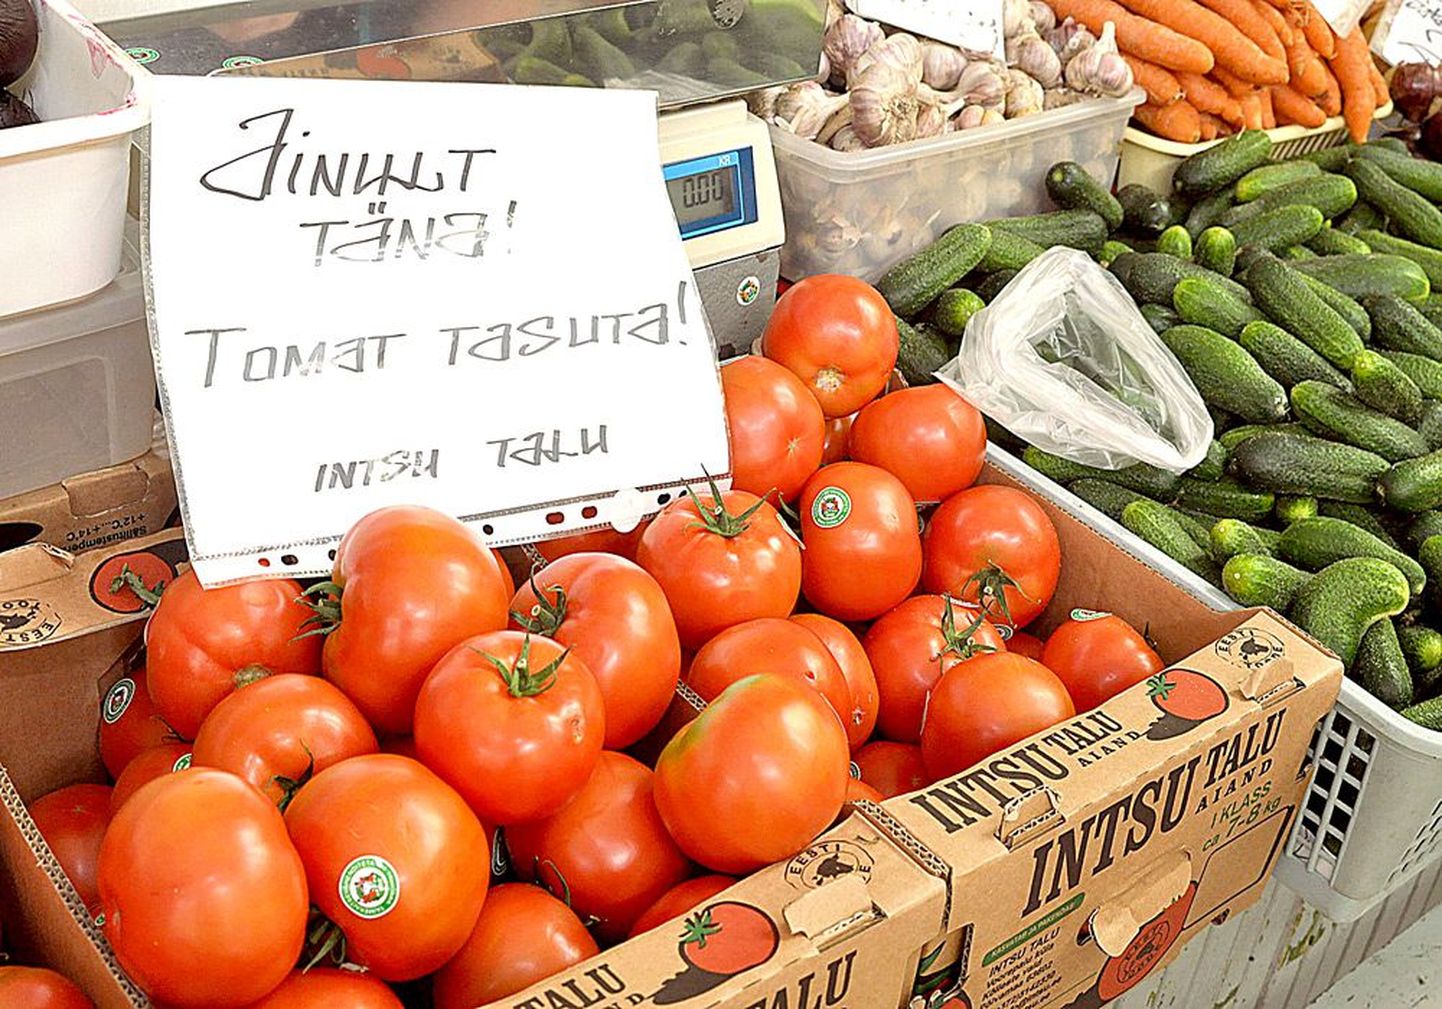 Intsu talu saadusi müüval letil Tartu turuhoones ilutses kolmapäeval silt, et tomateid saab tasuta. Teave priist kaubast levis kulutulena ning kunded viisid koju enam kui kolm tonni punaseid vilju.